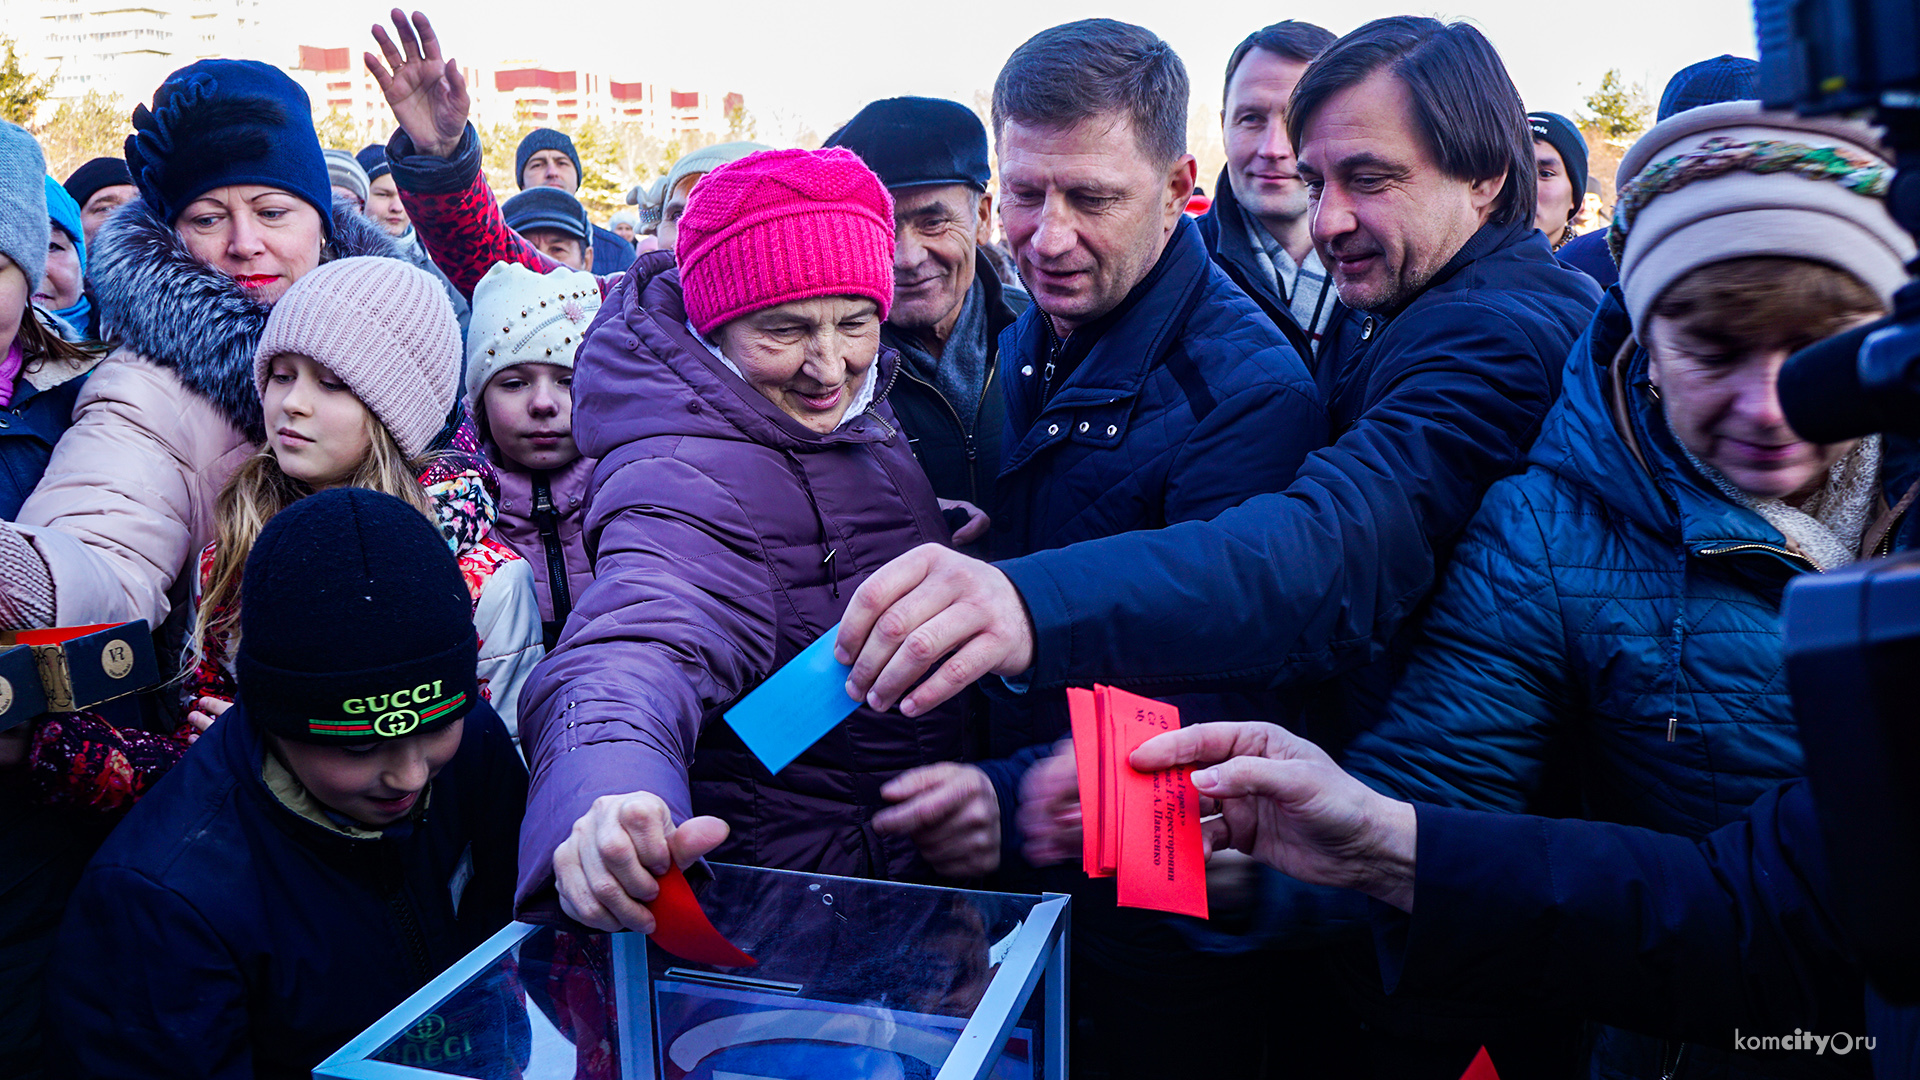 Проголосовать за гимн Комсомольска-на-Амуре смогли комсомольчане на празднике в День народного единства — Видео